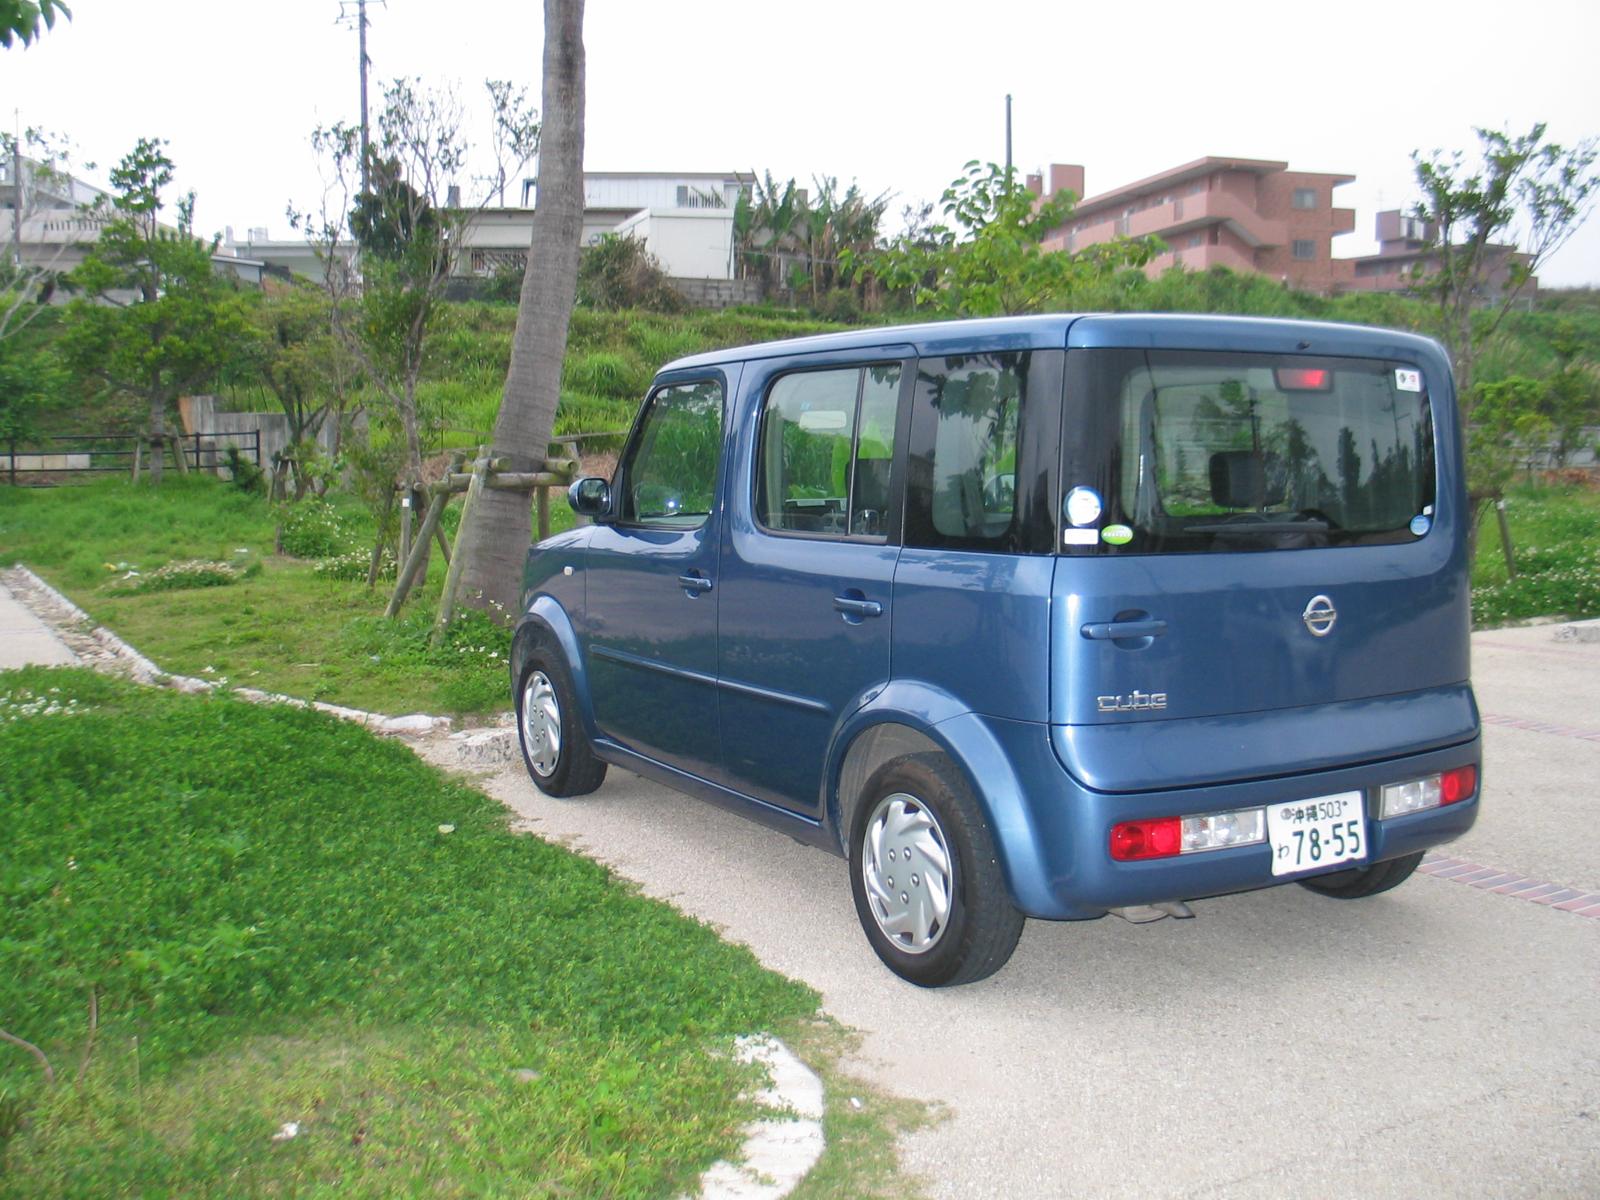 Japanese car #1